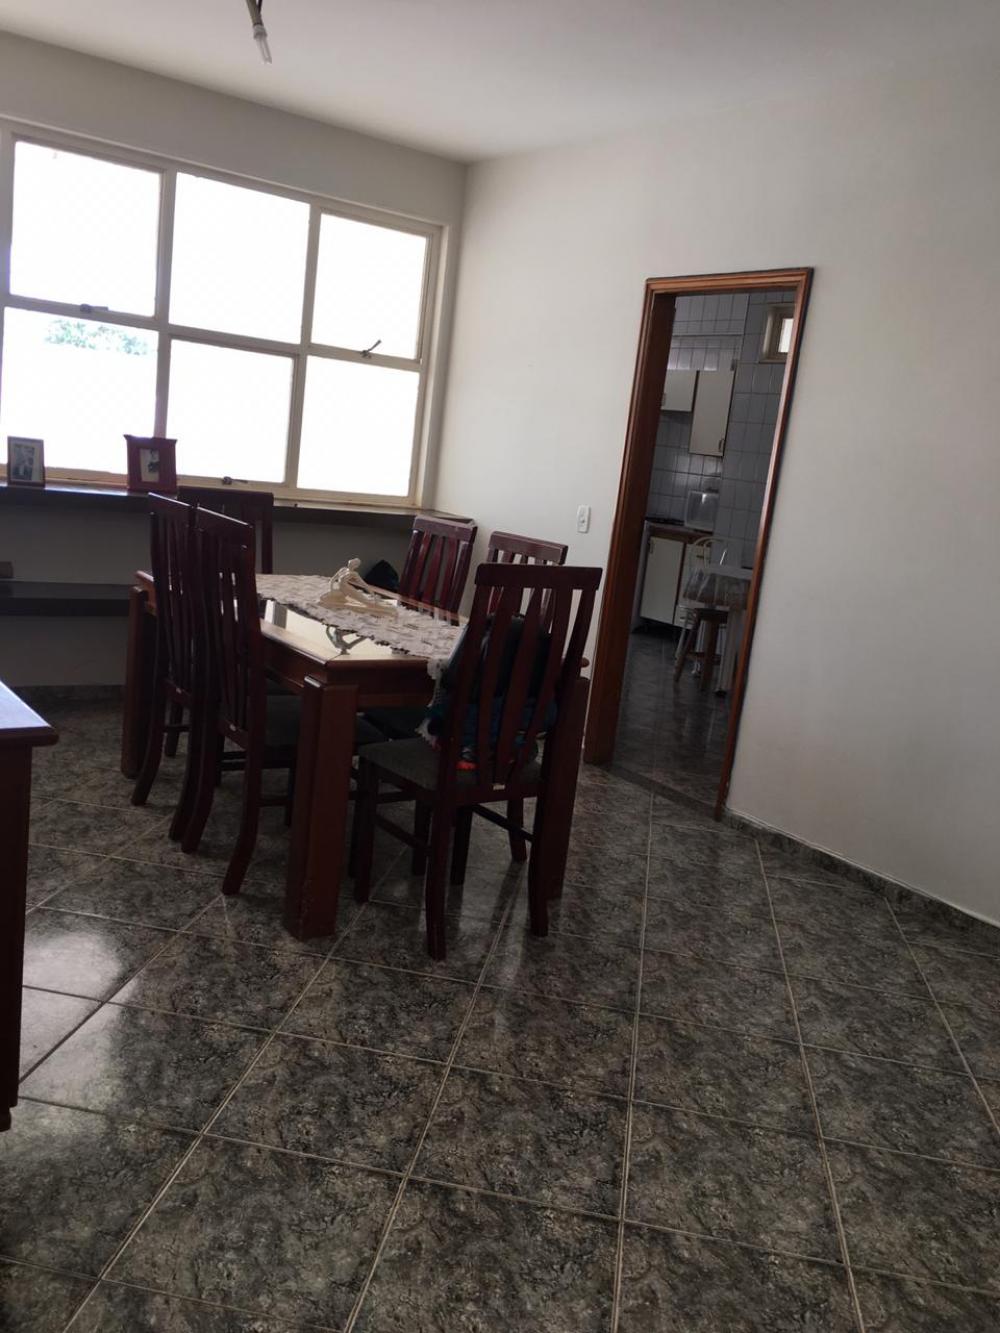 Alugar Casa / Padrão em São José do Rio Preto apenas R$ 4.000,00 - Foto 9